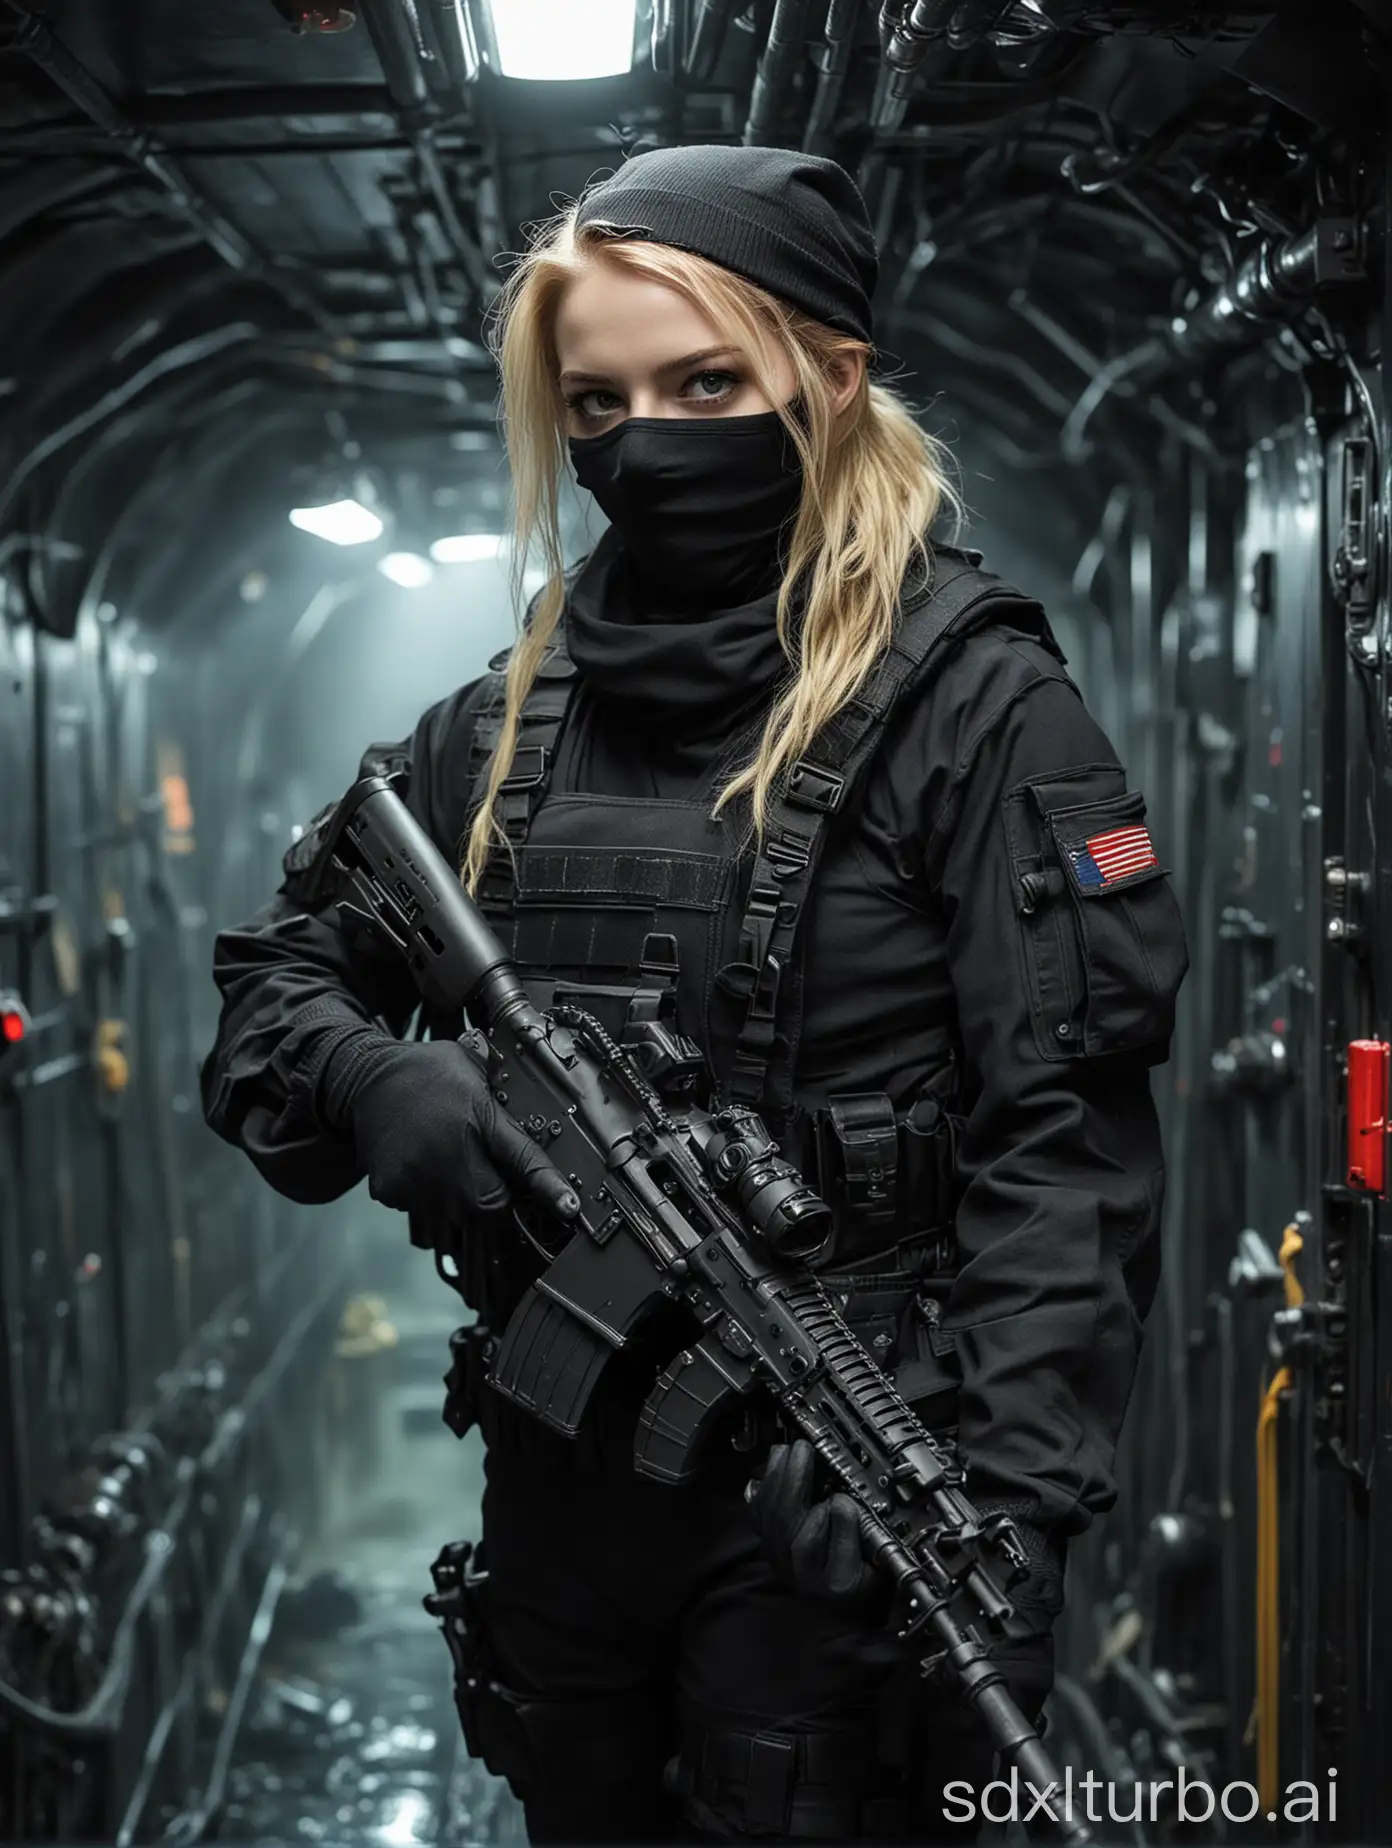 Hermosa chica pelirroja de piel muy blanca en uniforme militar negro negro táctico utilizando un pasamontañas negro,  guantes tácticos negros, lleva consigo un rifle de asalto, adentro de un submarino, luces rojas